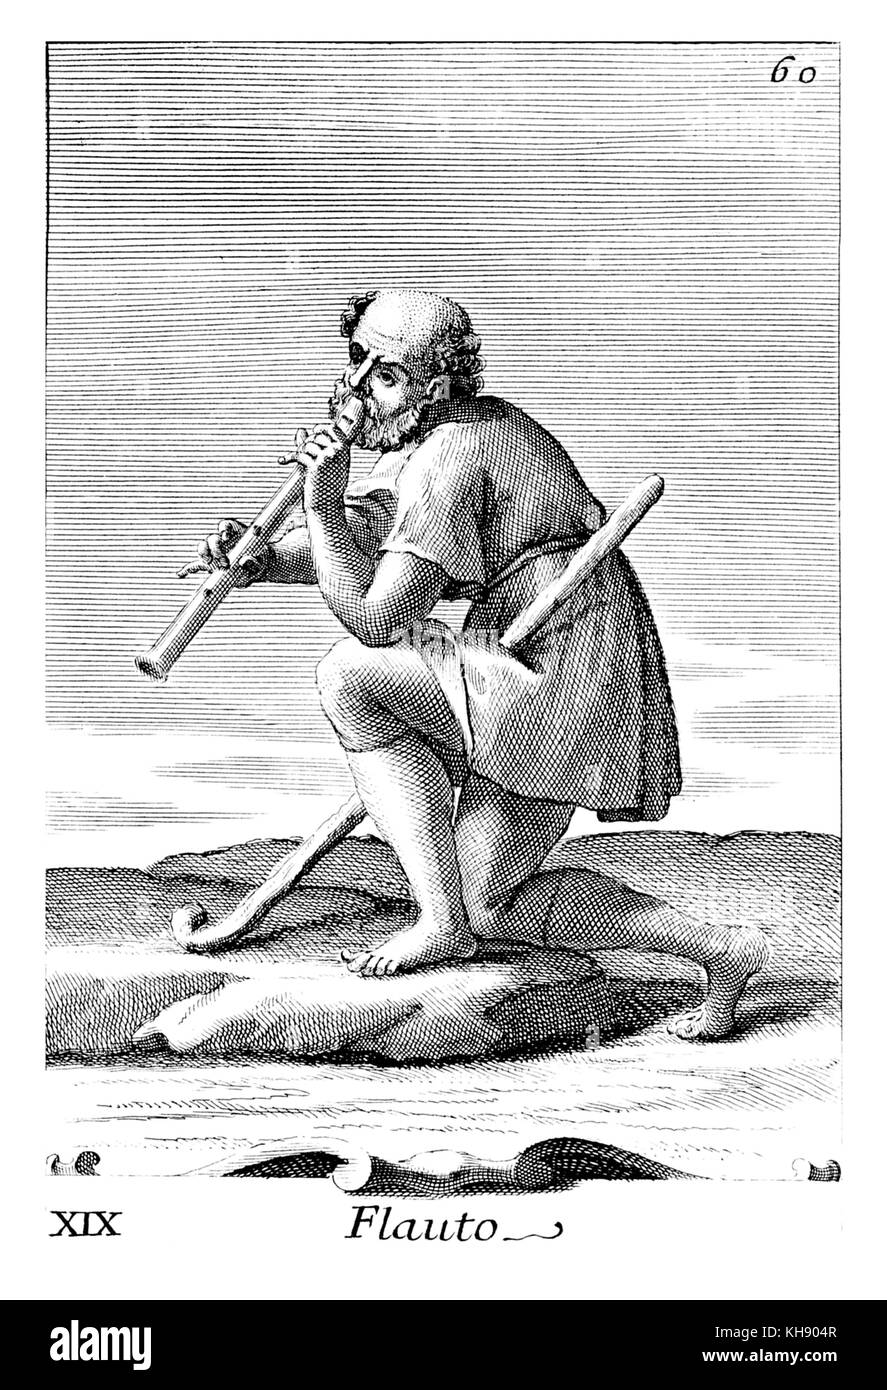 Mann spielt grosse gebohrt Art Recorder. Abbildung von Filippo Bonanni's 'Gabinetto Armonico" im Jahre 1723 veröffentlicht, Abbildung 19. Kupferstich von Arnold Van Westerhout. Bildunterschrift liest Flauto. Stockfoto